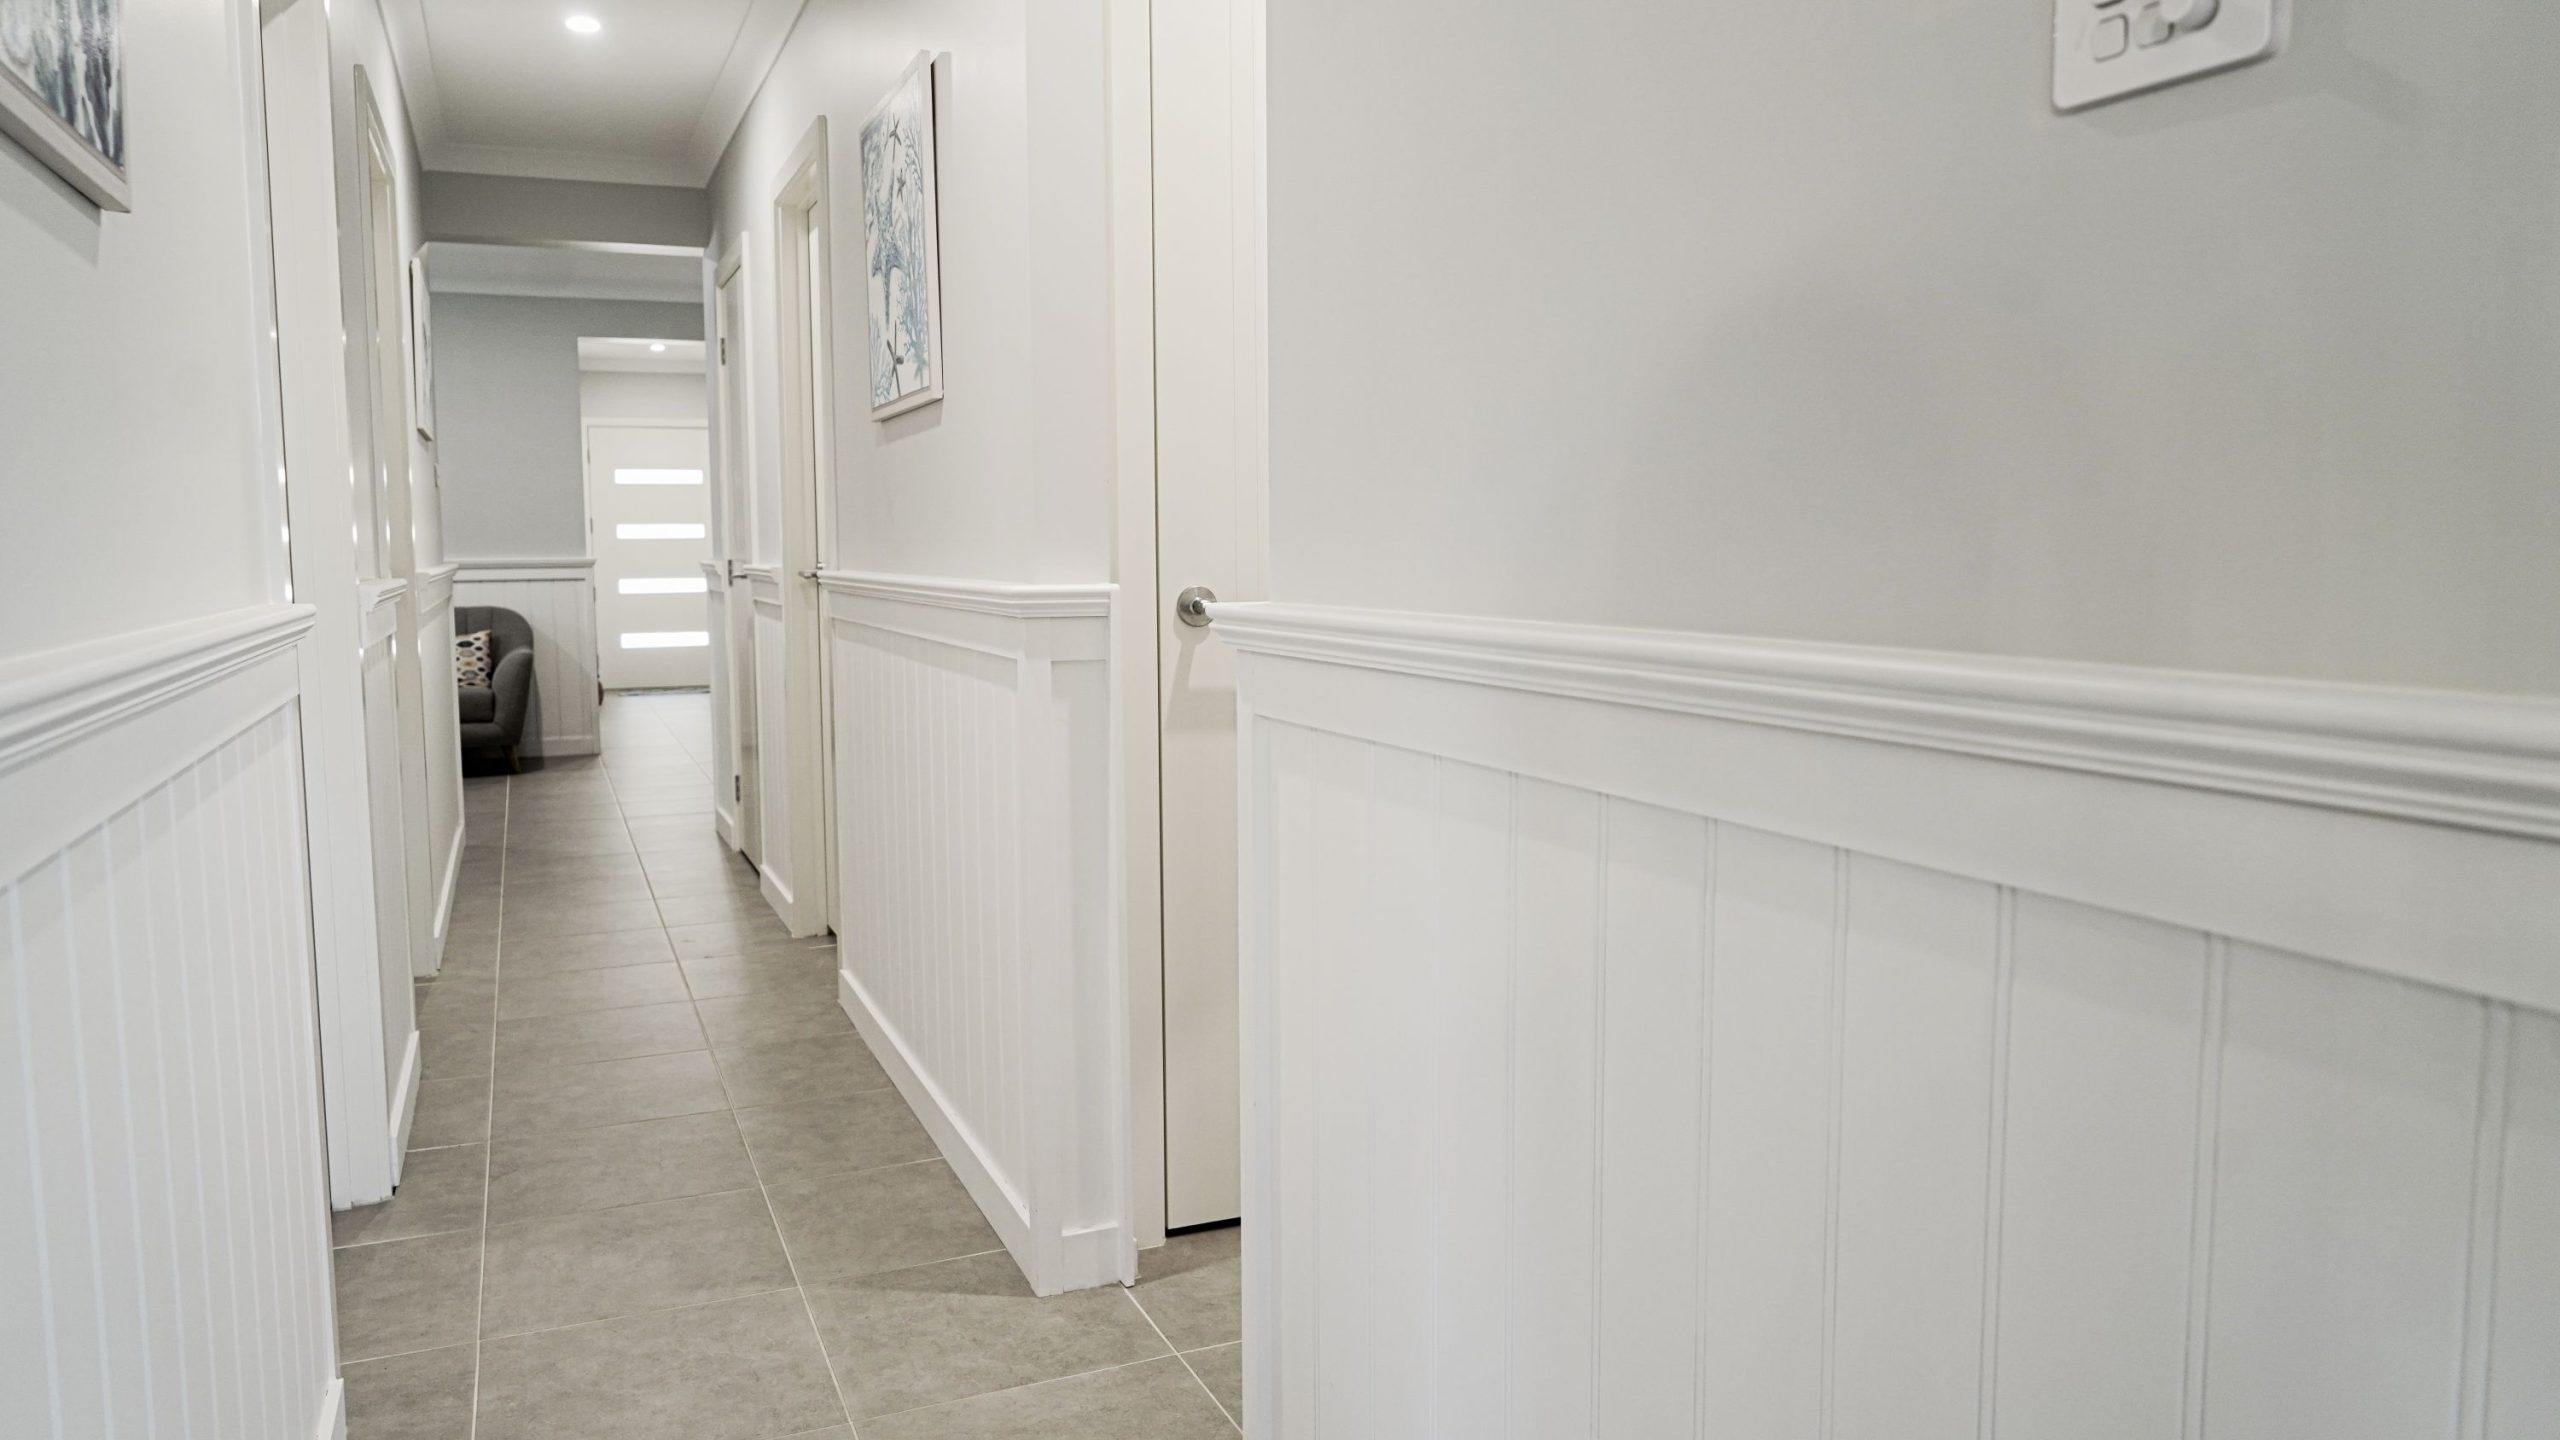 Doors Plus - Wainscoting - Hallway leading to Bedrooms and Front Door